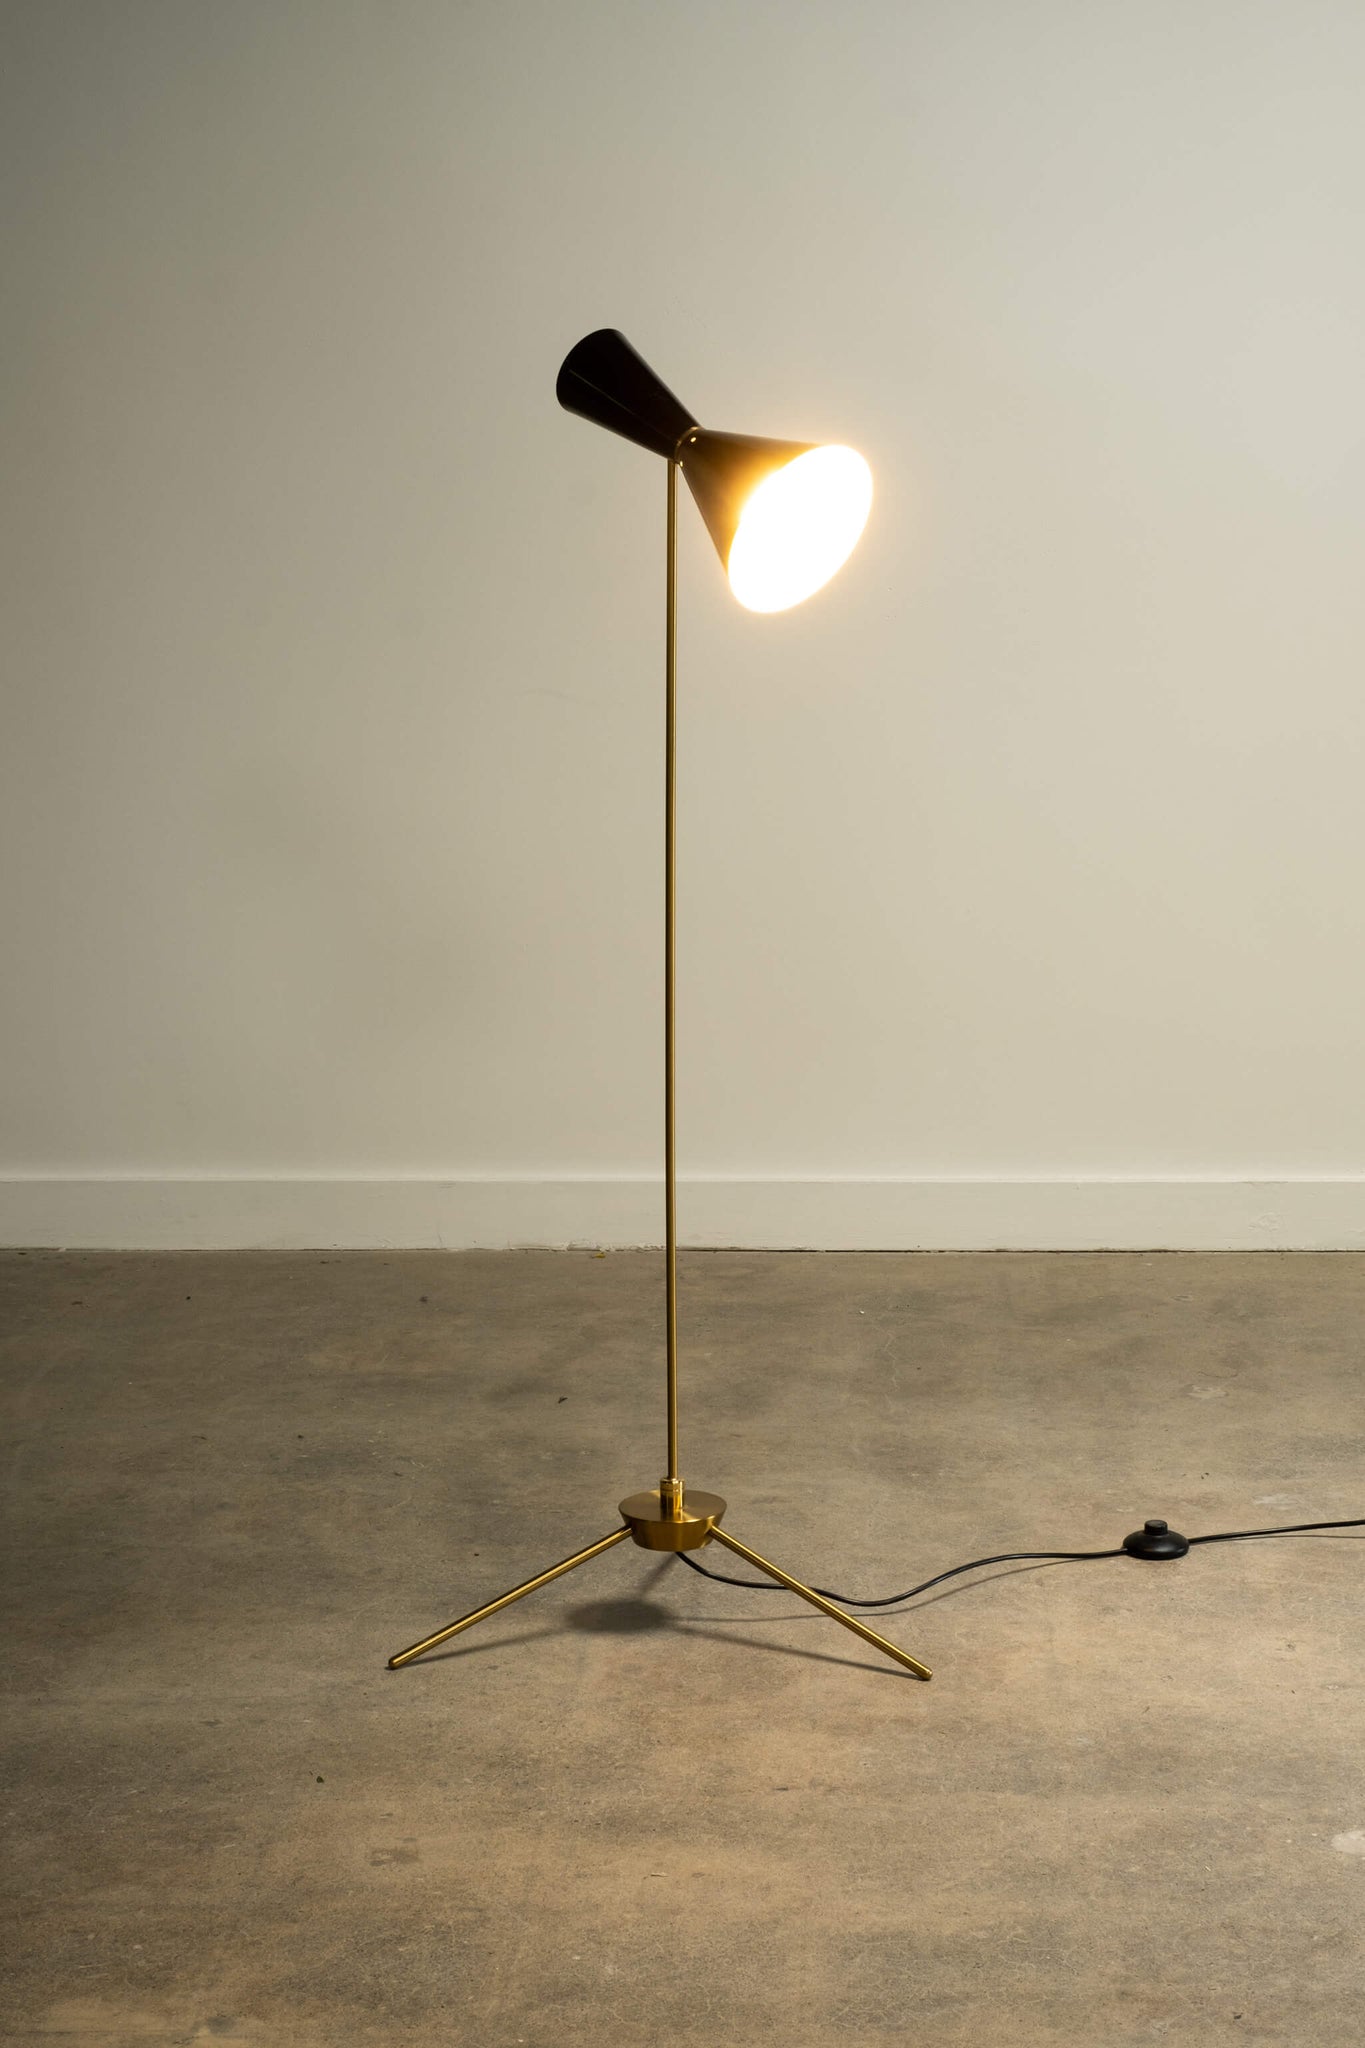 Vintage Mid Century Tilting Tripod Floor Lamp, lamp light on